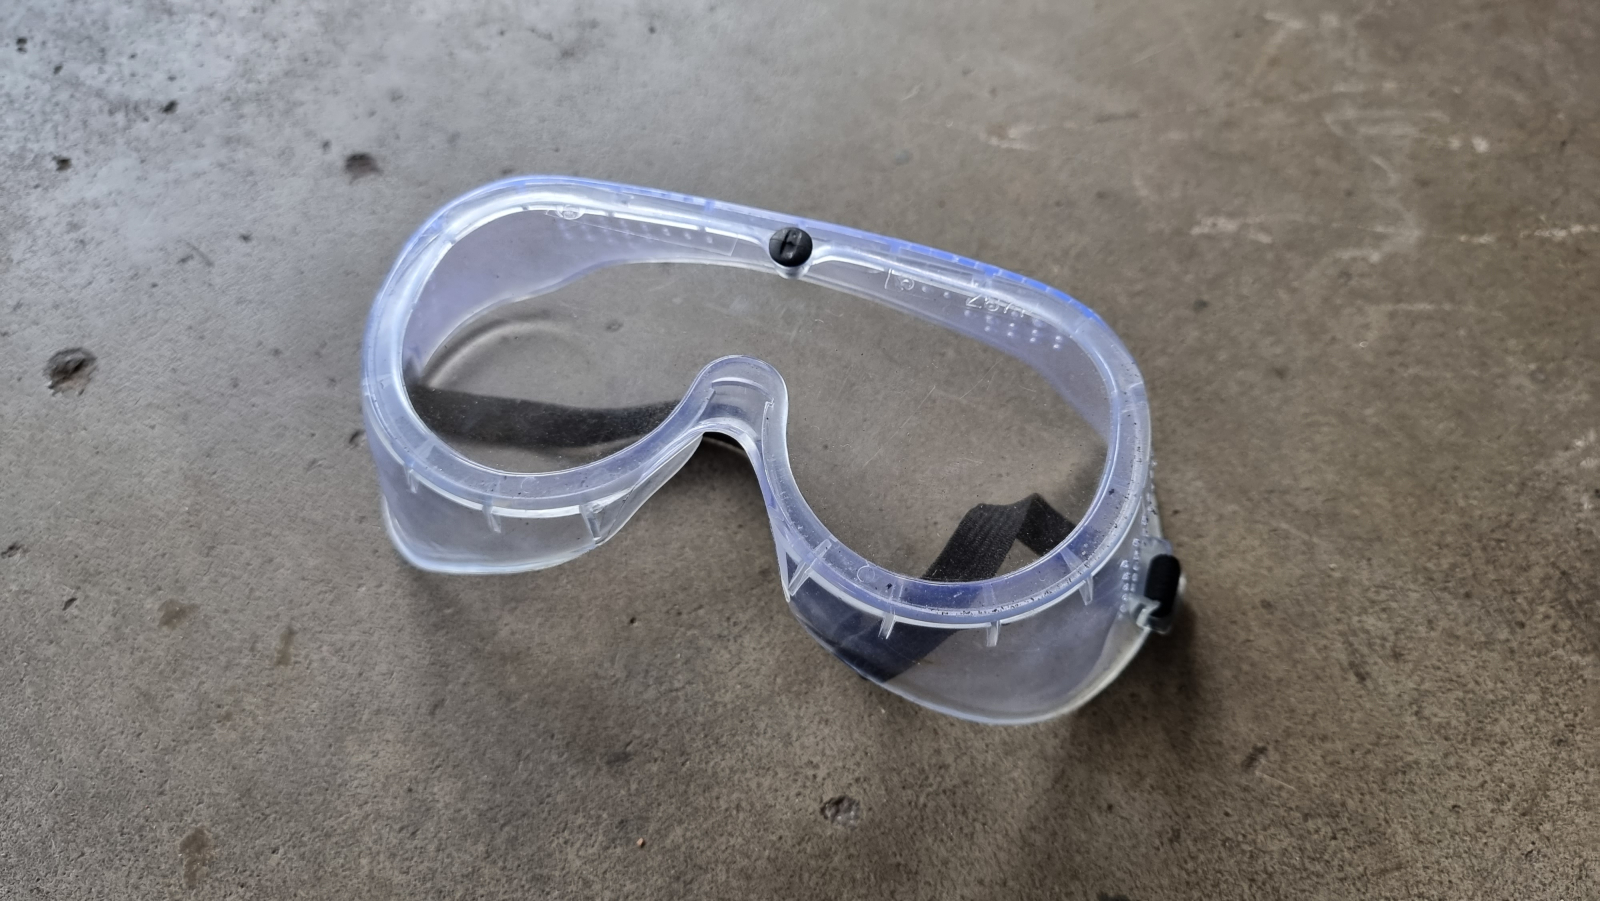 Schutzbrille mit seitlichem Augenschutz.